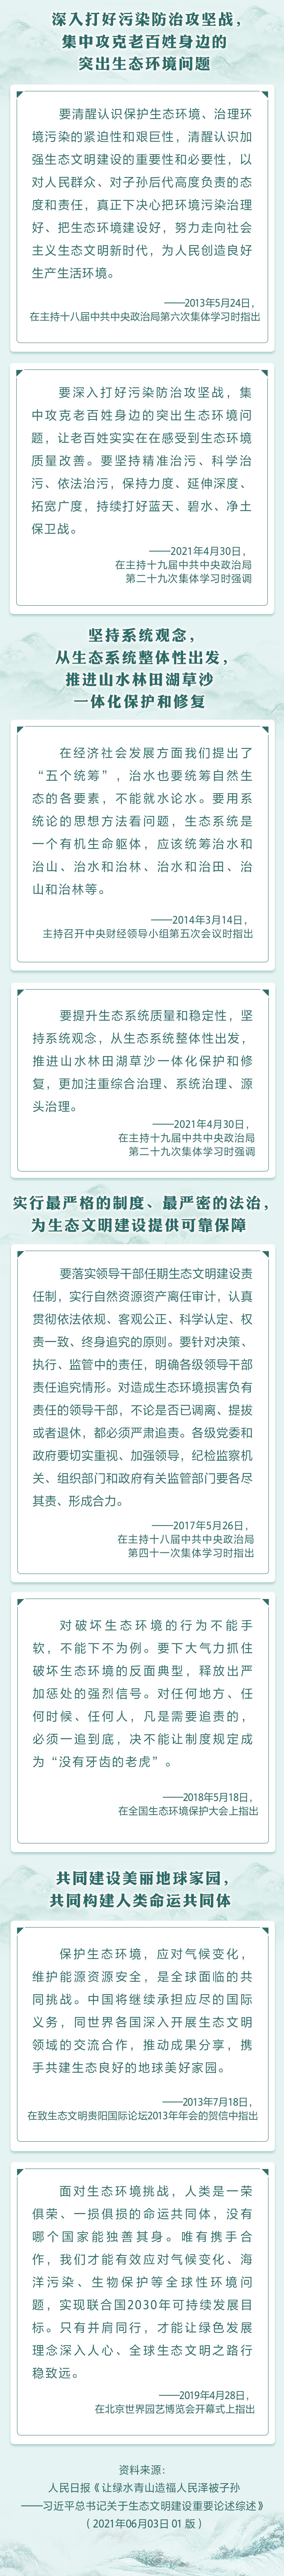 人民网-中国共产党新闻网2.jpg